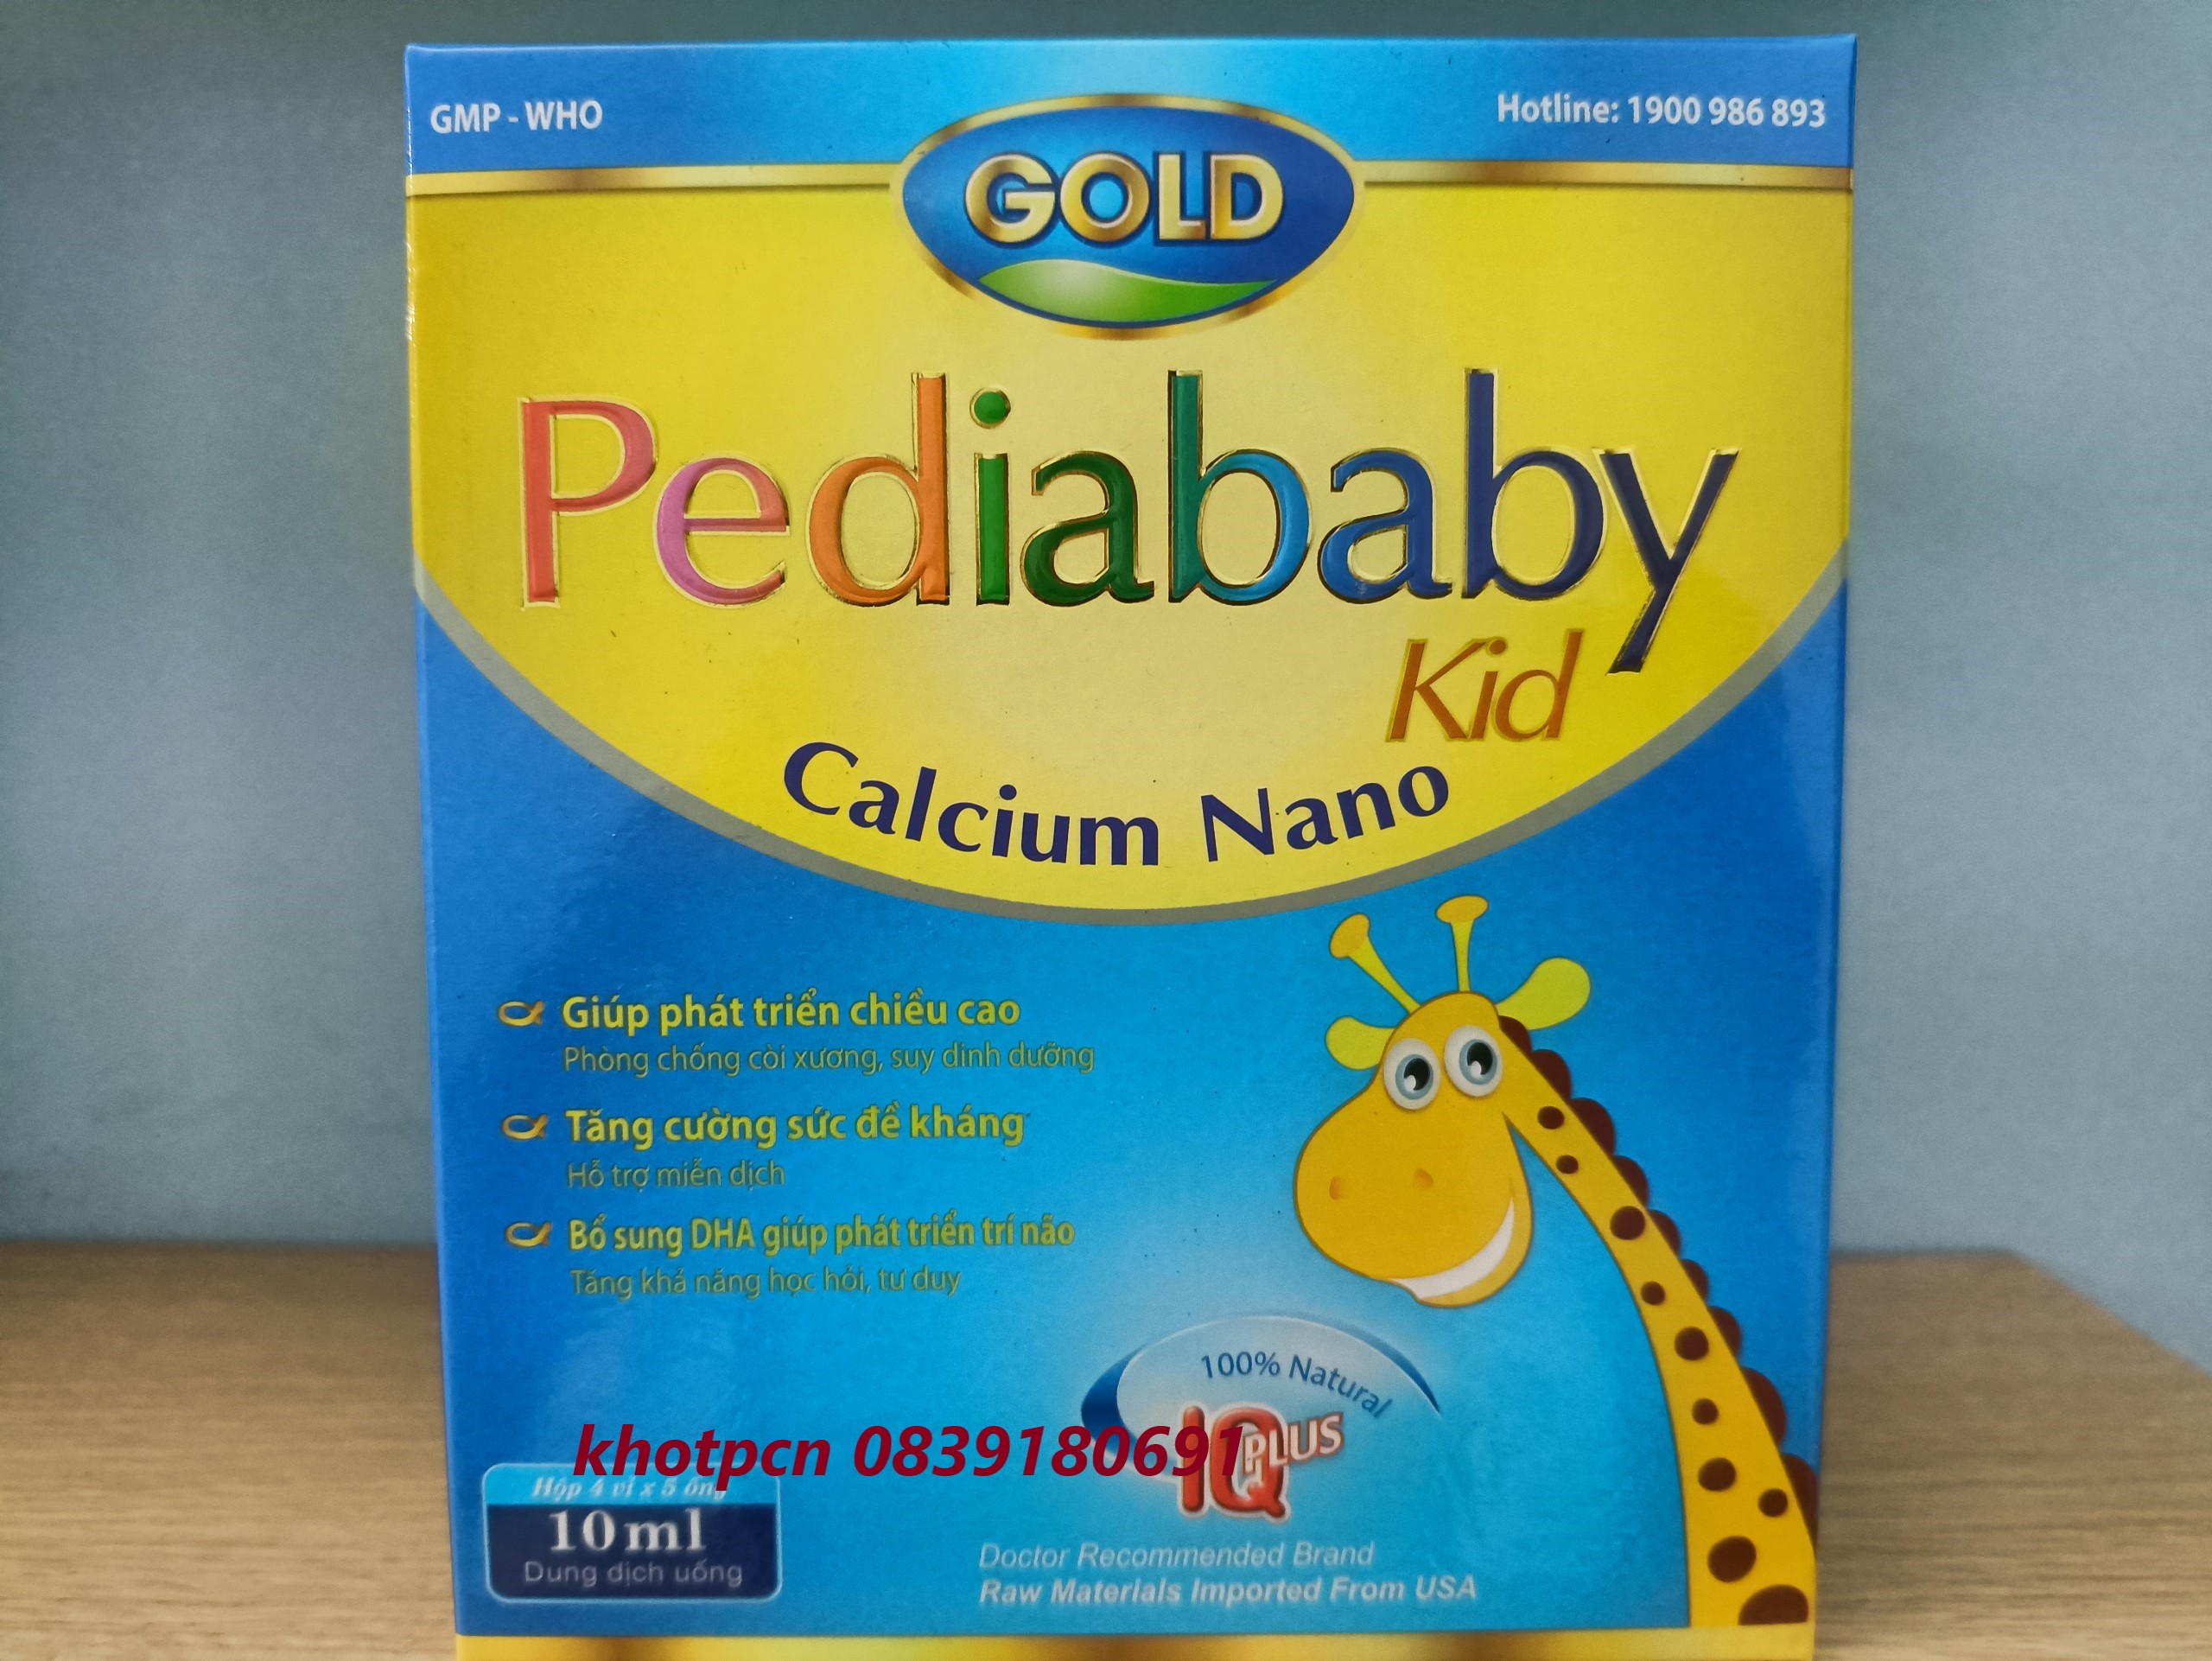 Pediababy kid Calcium nano giúp phát triển chiều cao tăng cường sức đề kháng, bổ sung DHA, giúp phát triển trí não bổ sung canxi và vitamin D3 ,giúp xương chắc khỏe giảm nguy cơ loãng xương rất hiêu quả - hộp 20 ống